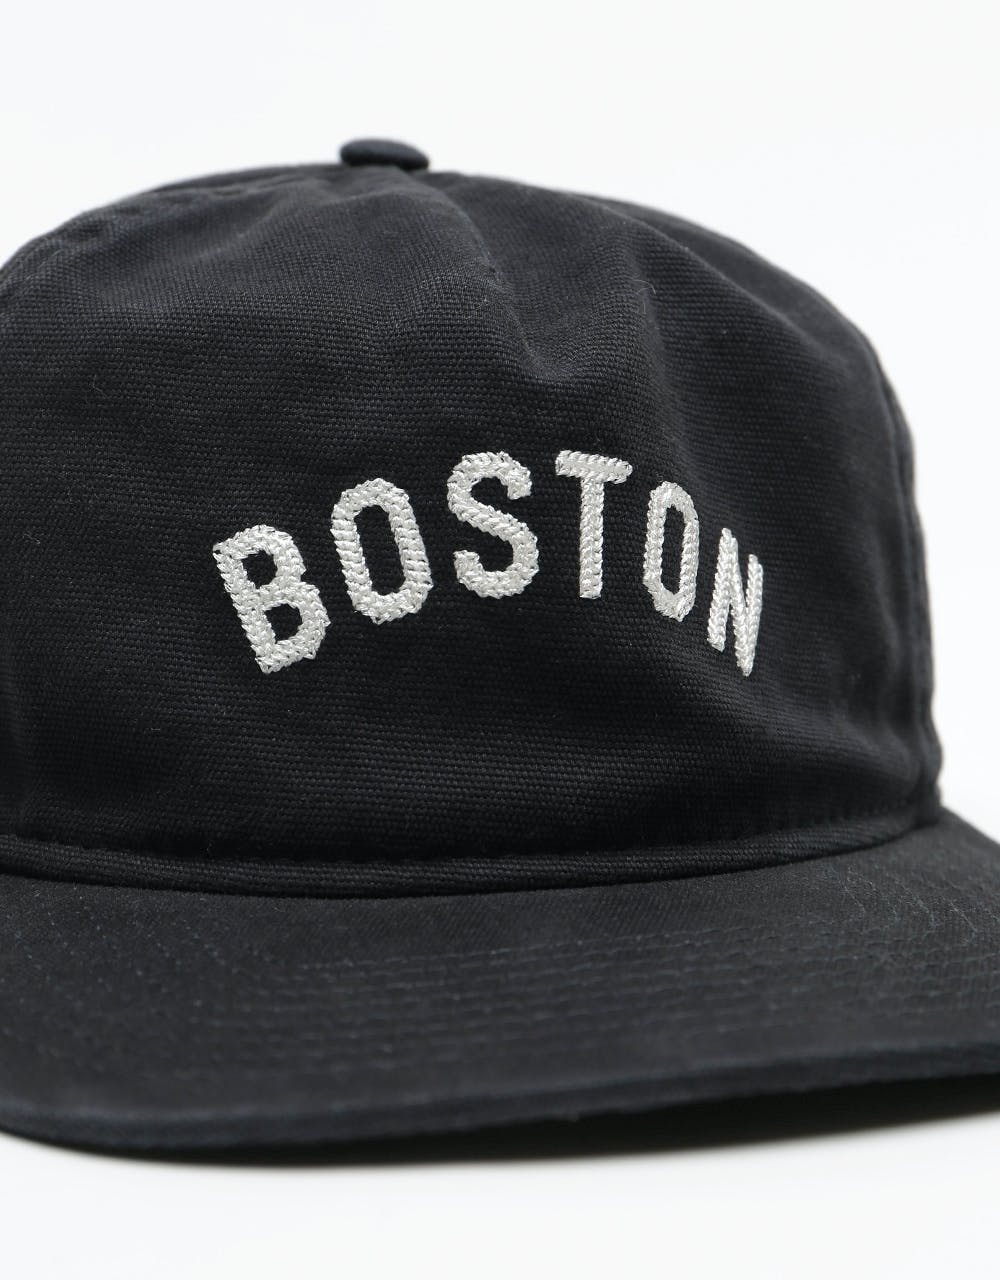 New Era 9Fifty OG Boston Braves Veteran Snapback Cap - Black